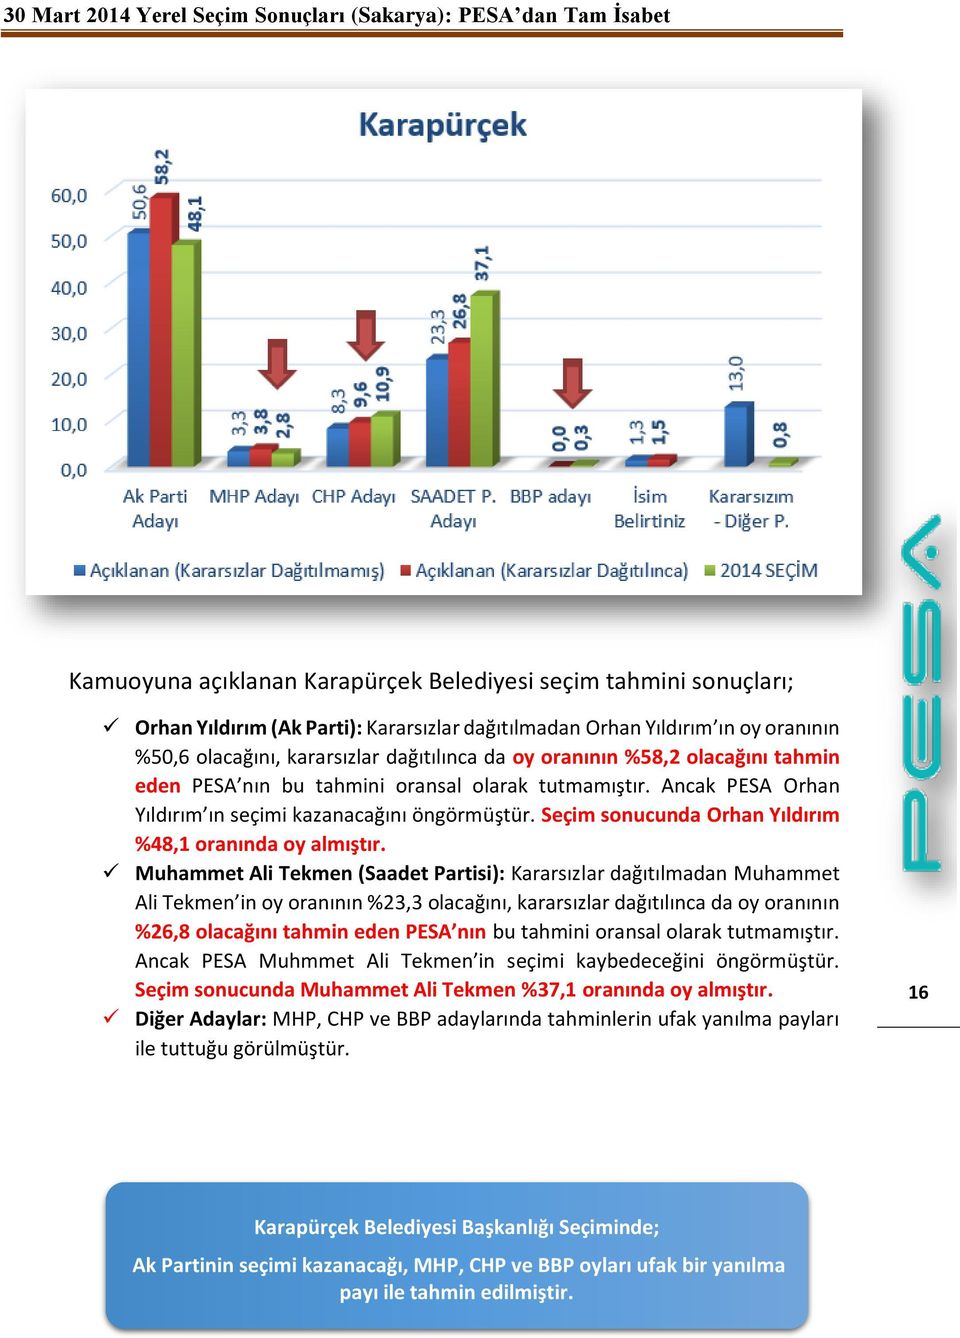 Seçim sonucunda Orhan Yıldırım %48,1 oranında oy almıştır.